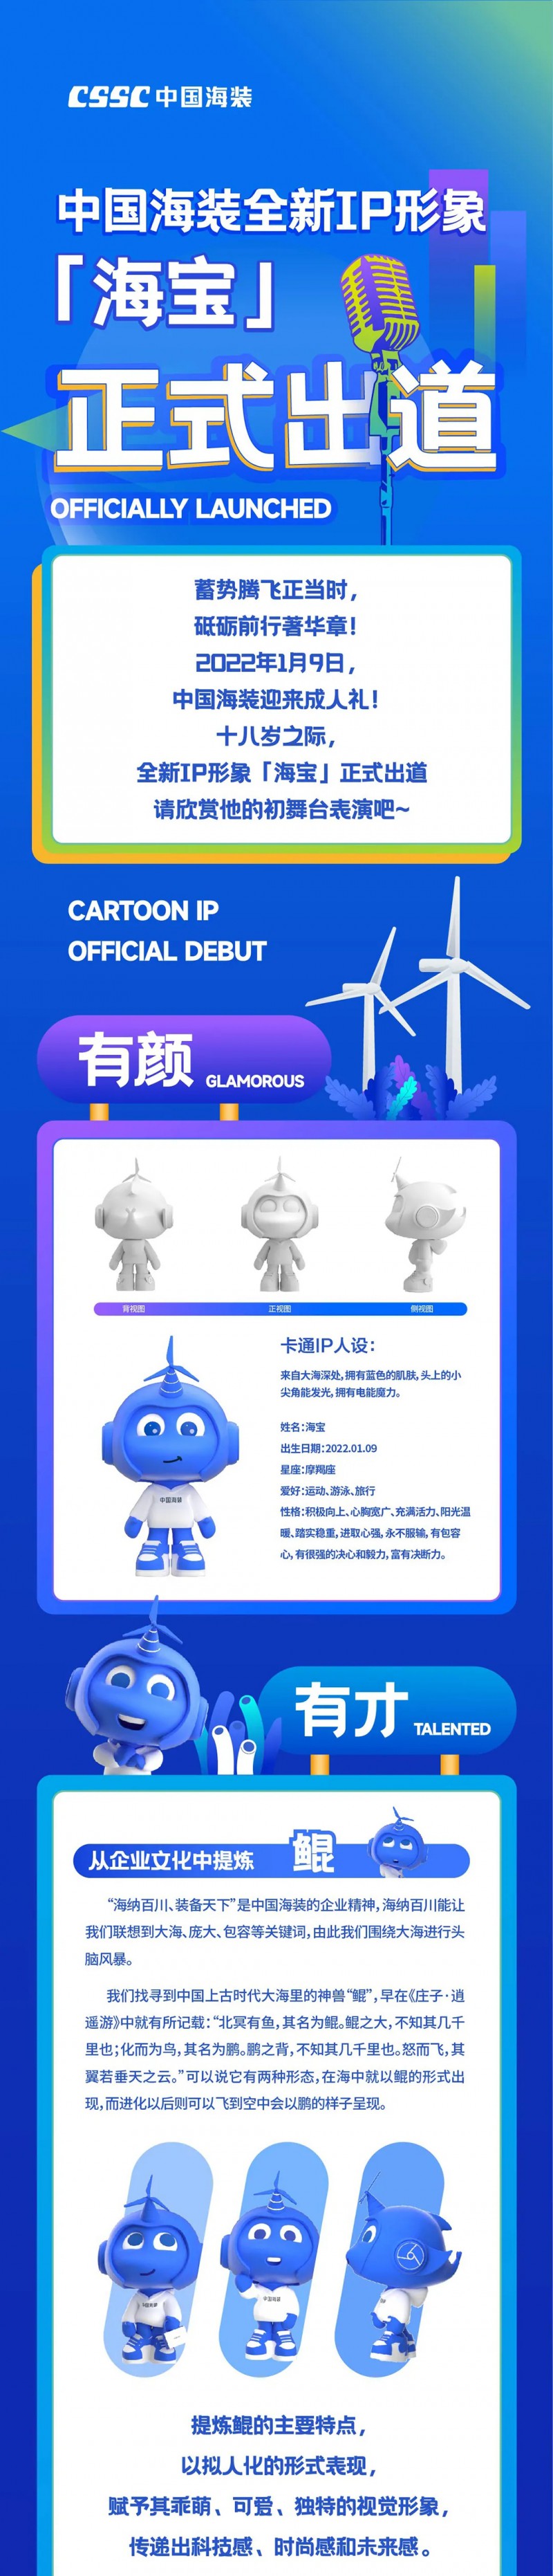 【有颜 | 有才 | 有料】中国海装全新IP形象「海宝」正式出道